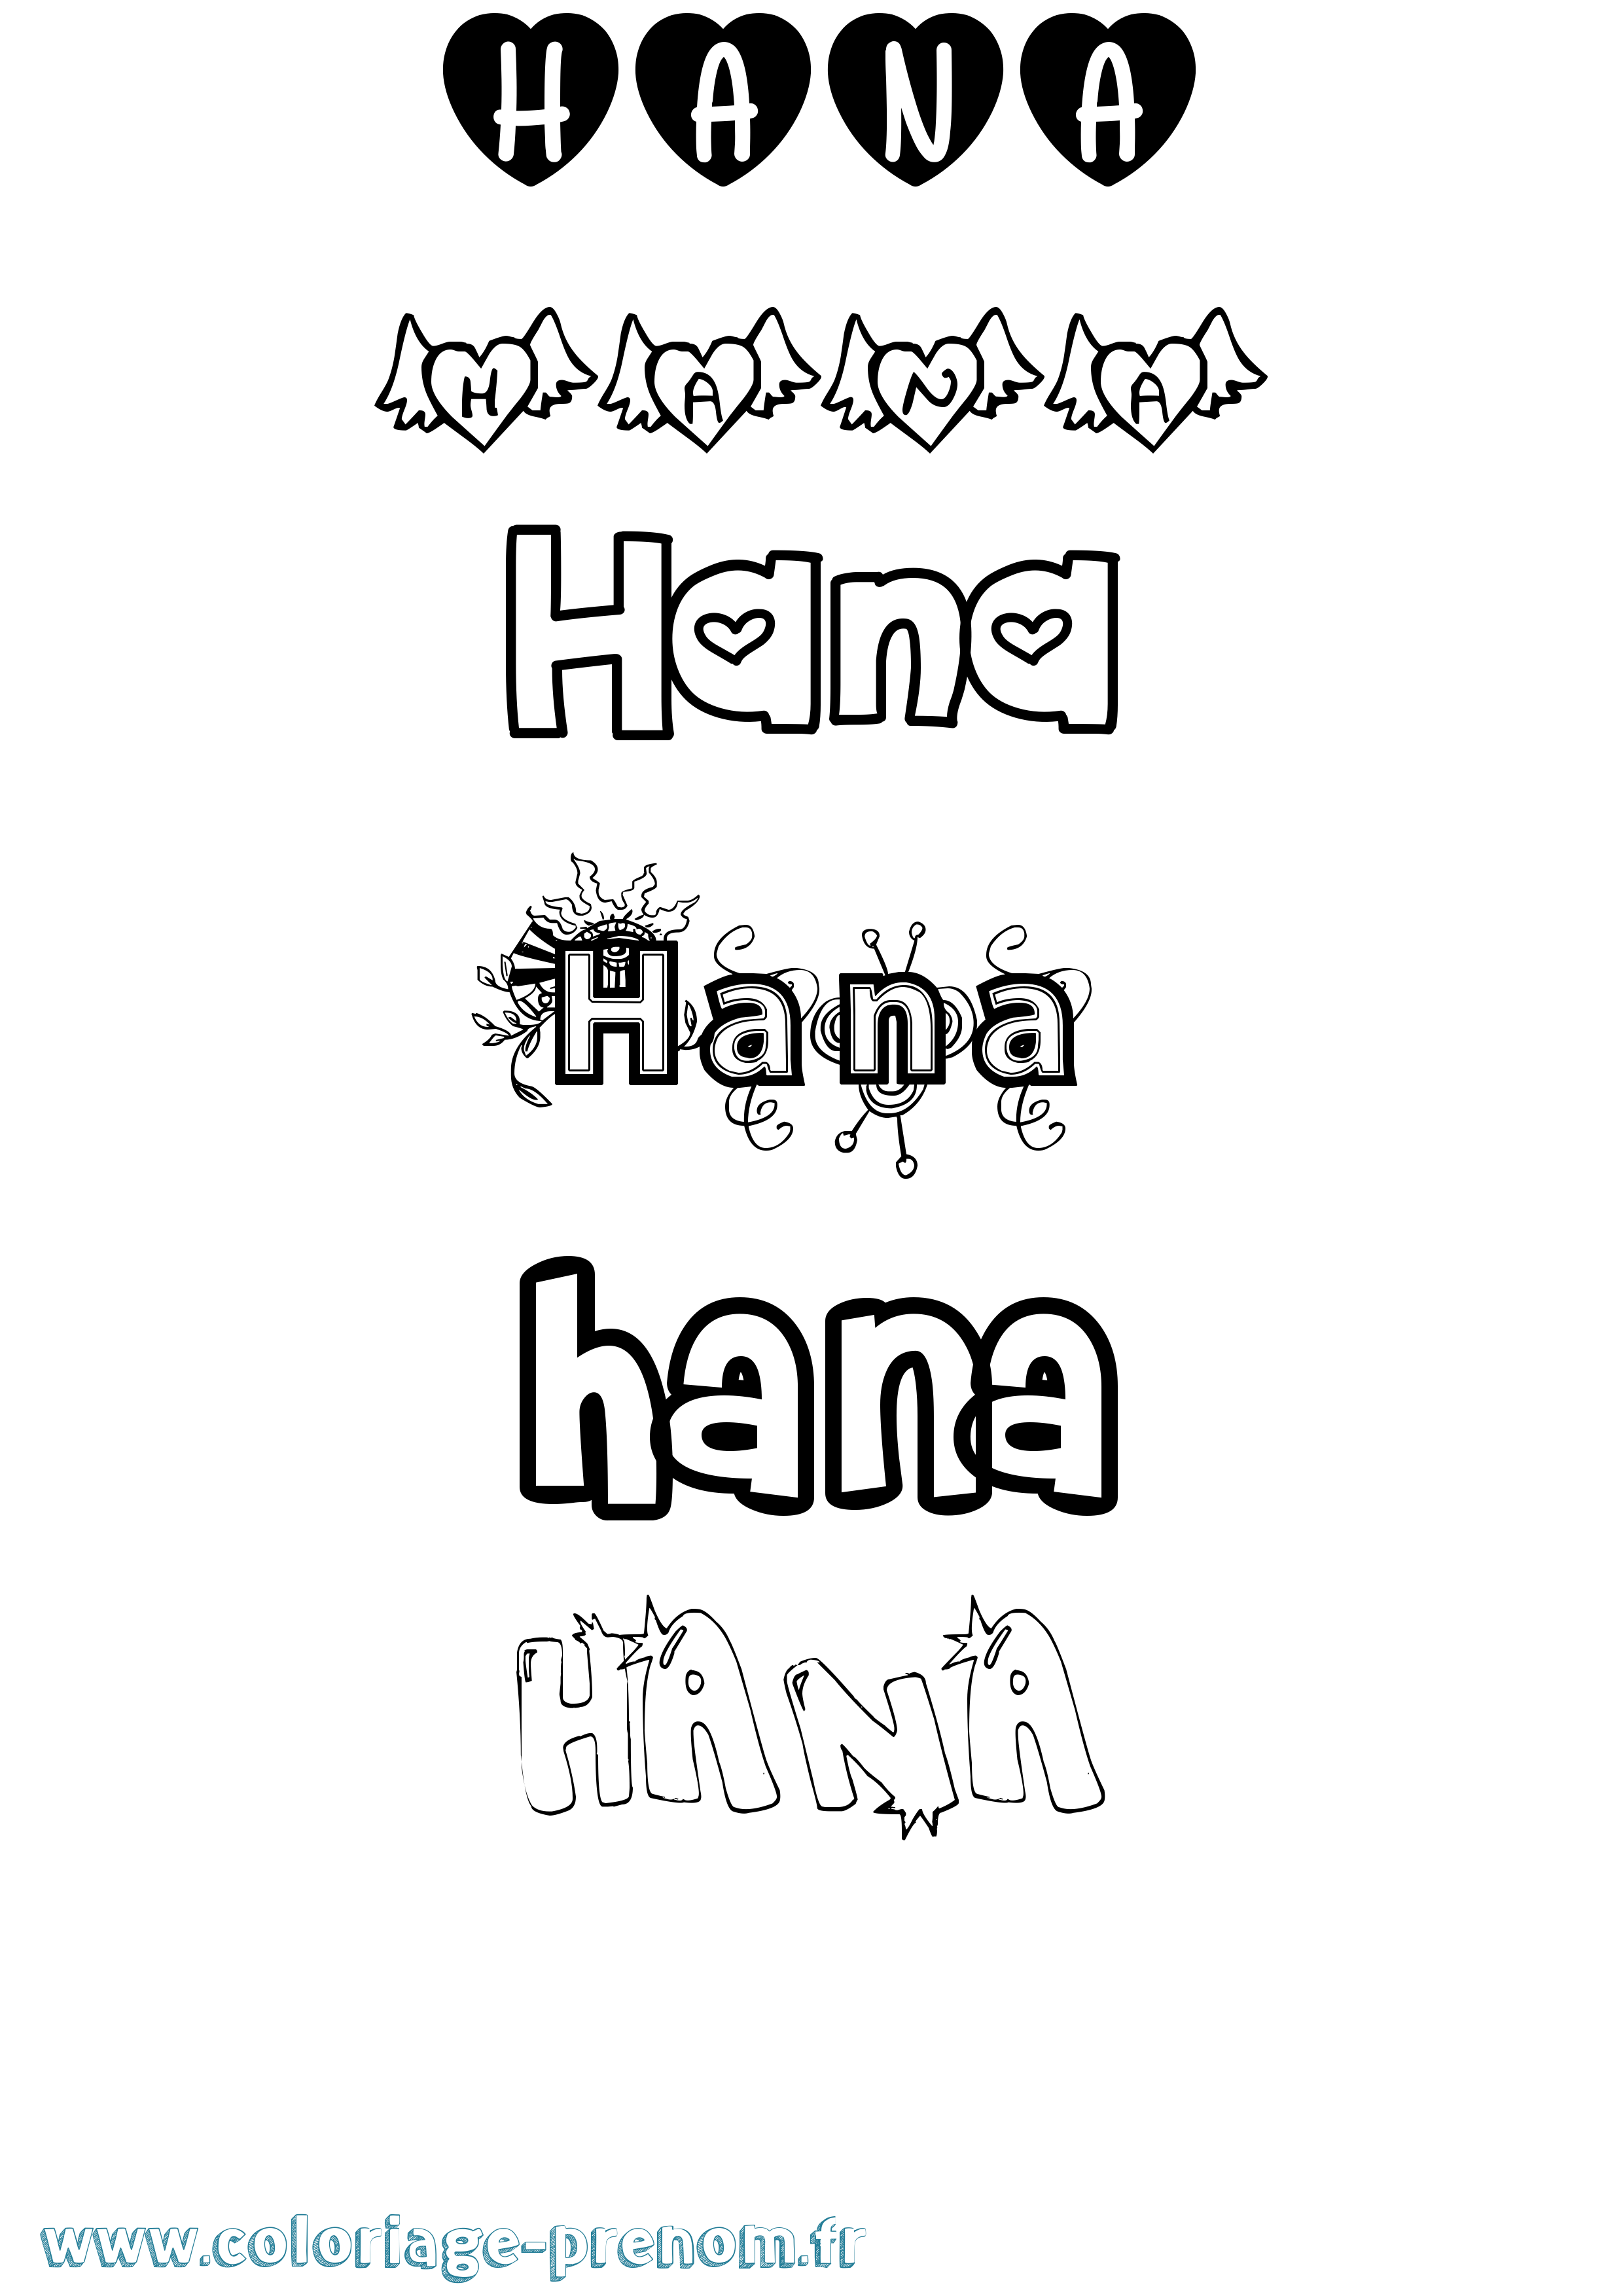 Coloriage prénom Hana